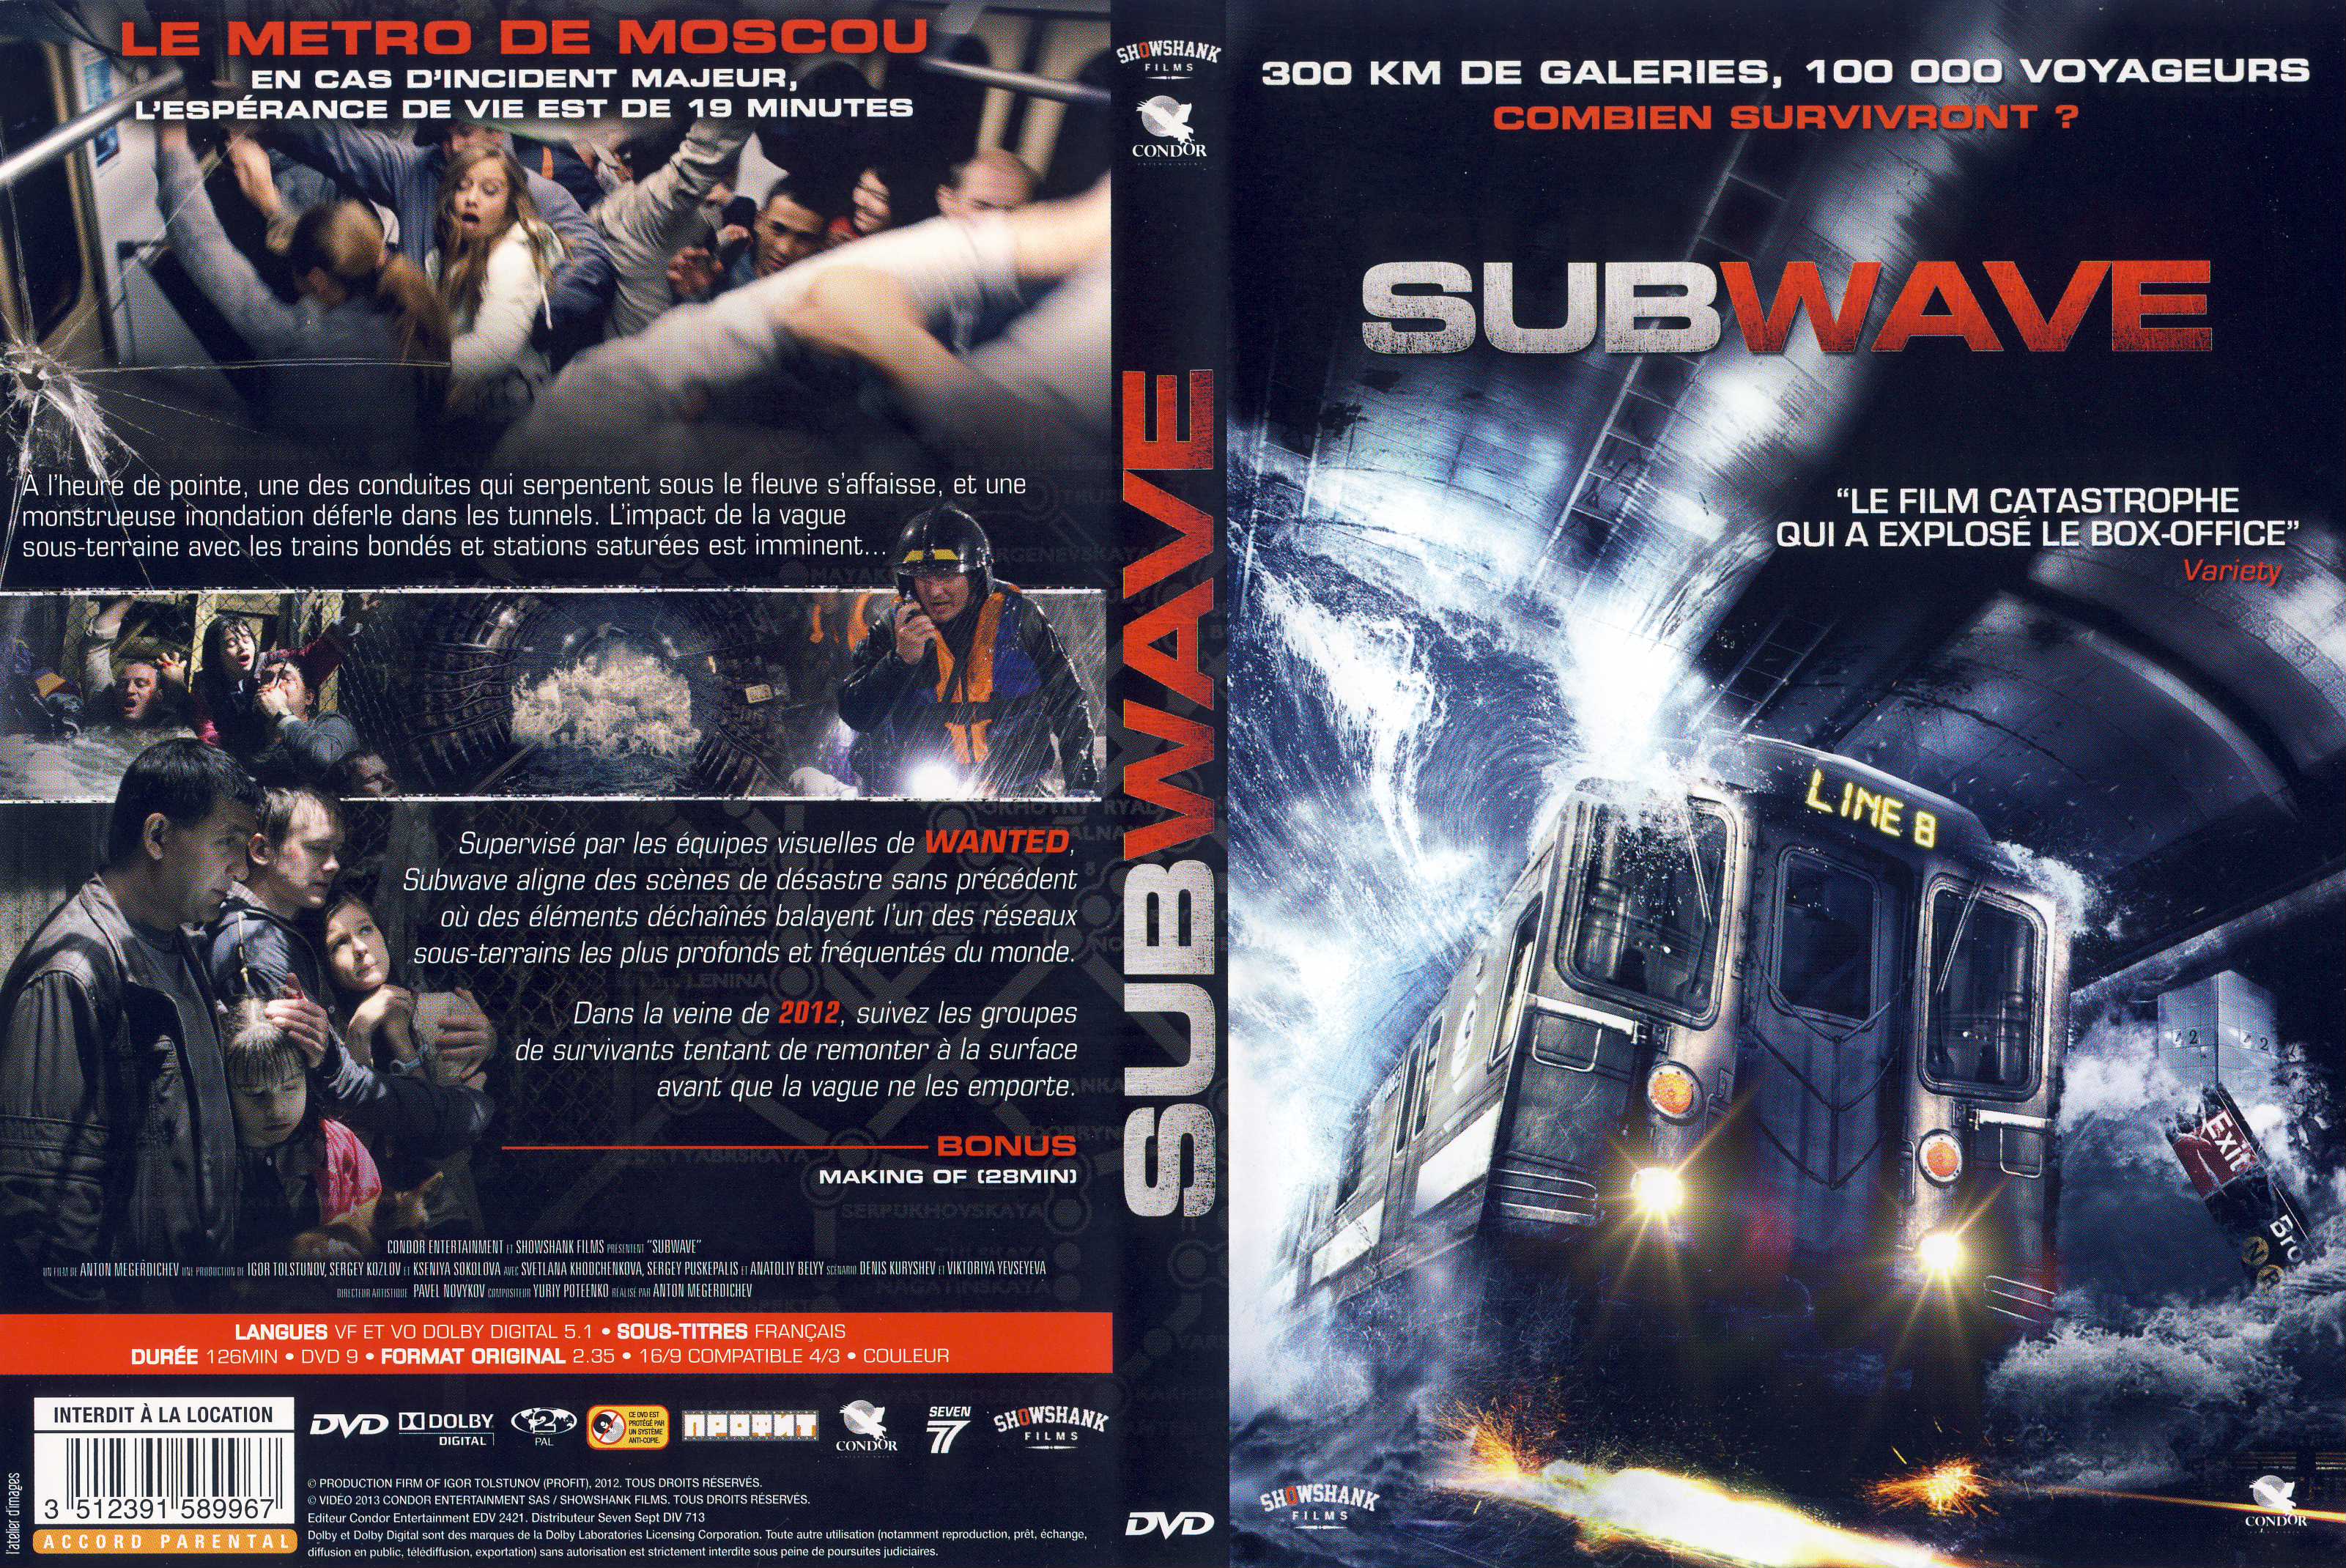 Jaquette DVD Subwave